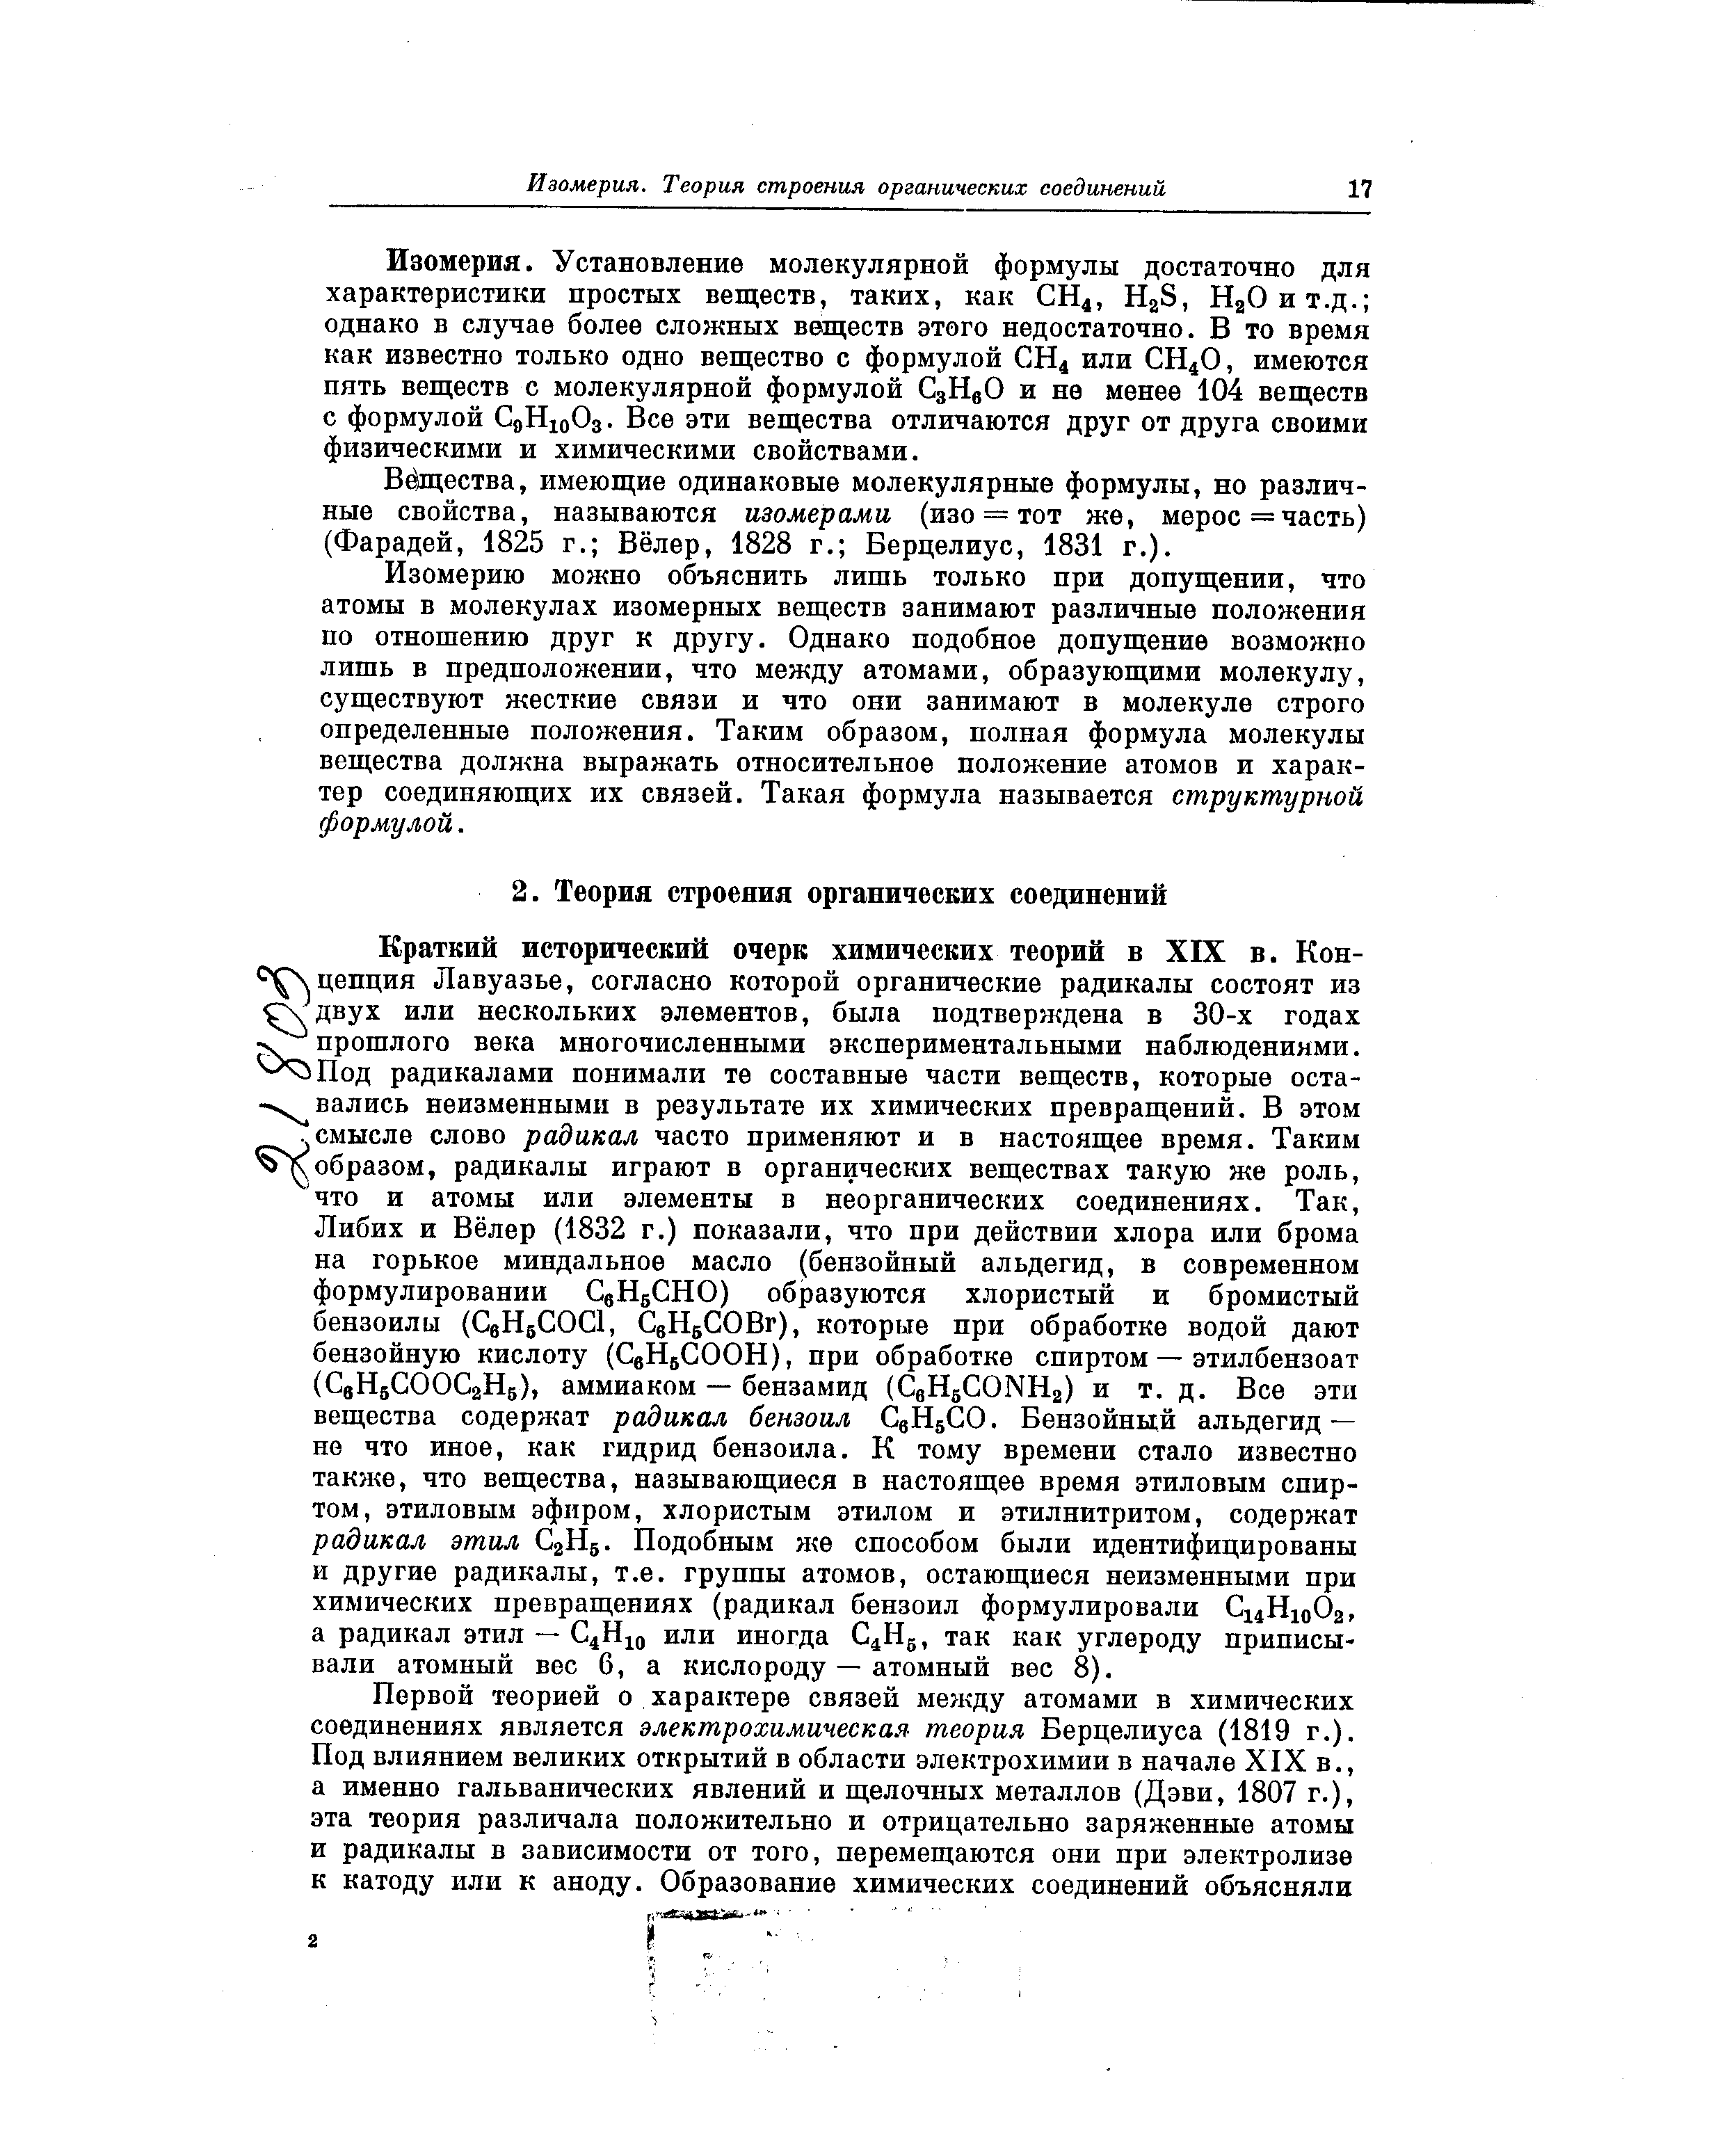 Вещества, имеющие одинаковые молекулярные формулы, но различные свойства, называются изомерами (изо == тот же, мерос= часть) (Фарадей, 1825 г. Вёлер, 1828 г. Берцелиус, 1831 г.).